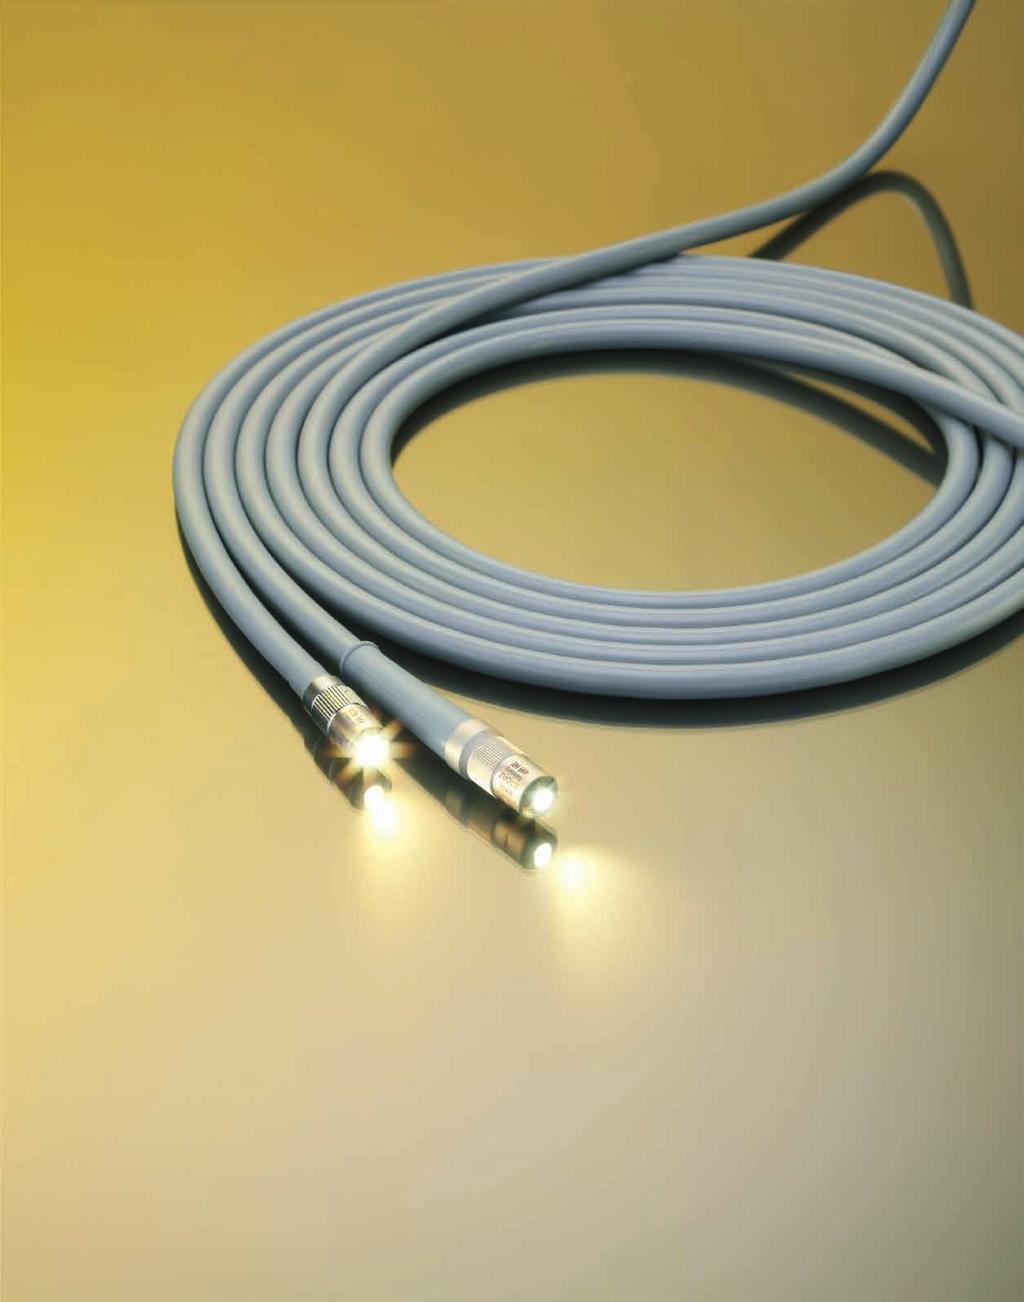 5 mm, length 250 cm Fiber optic light guide for endoscopes, diameter 8 mm or more, active diameter 5 mm.